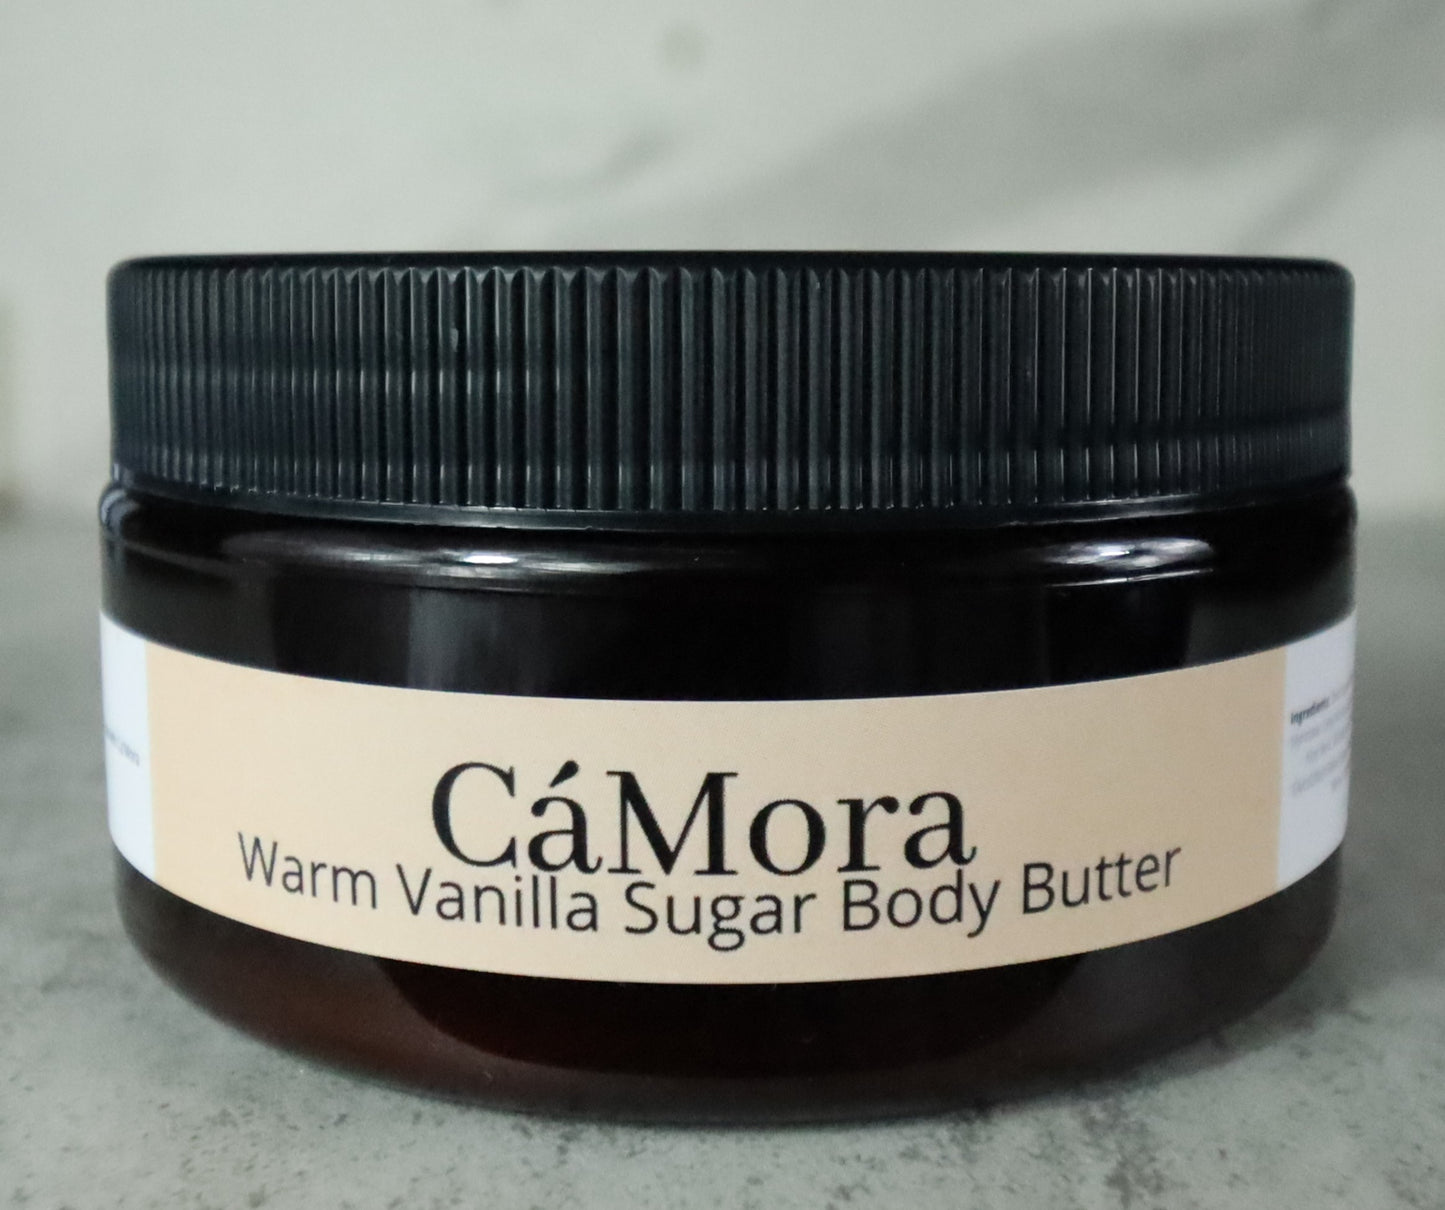 Ca'Mora warm vanilla sugar body butter for moisturized skin.